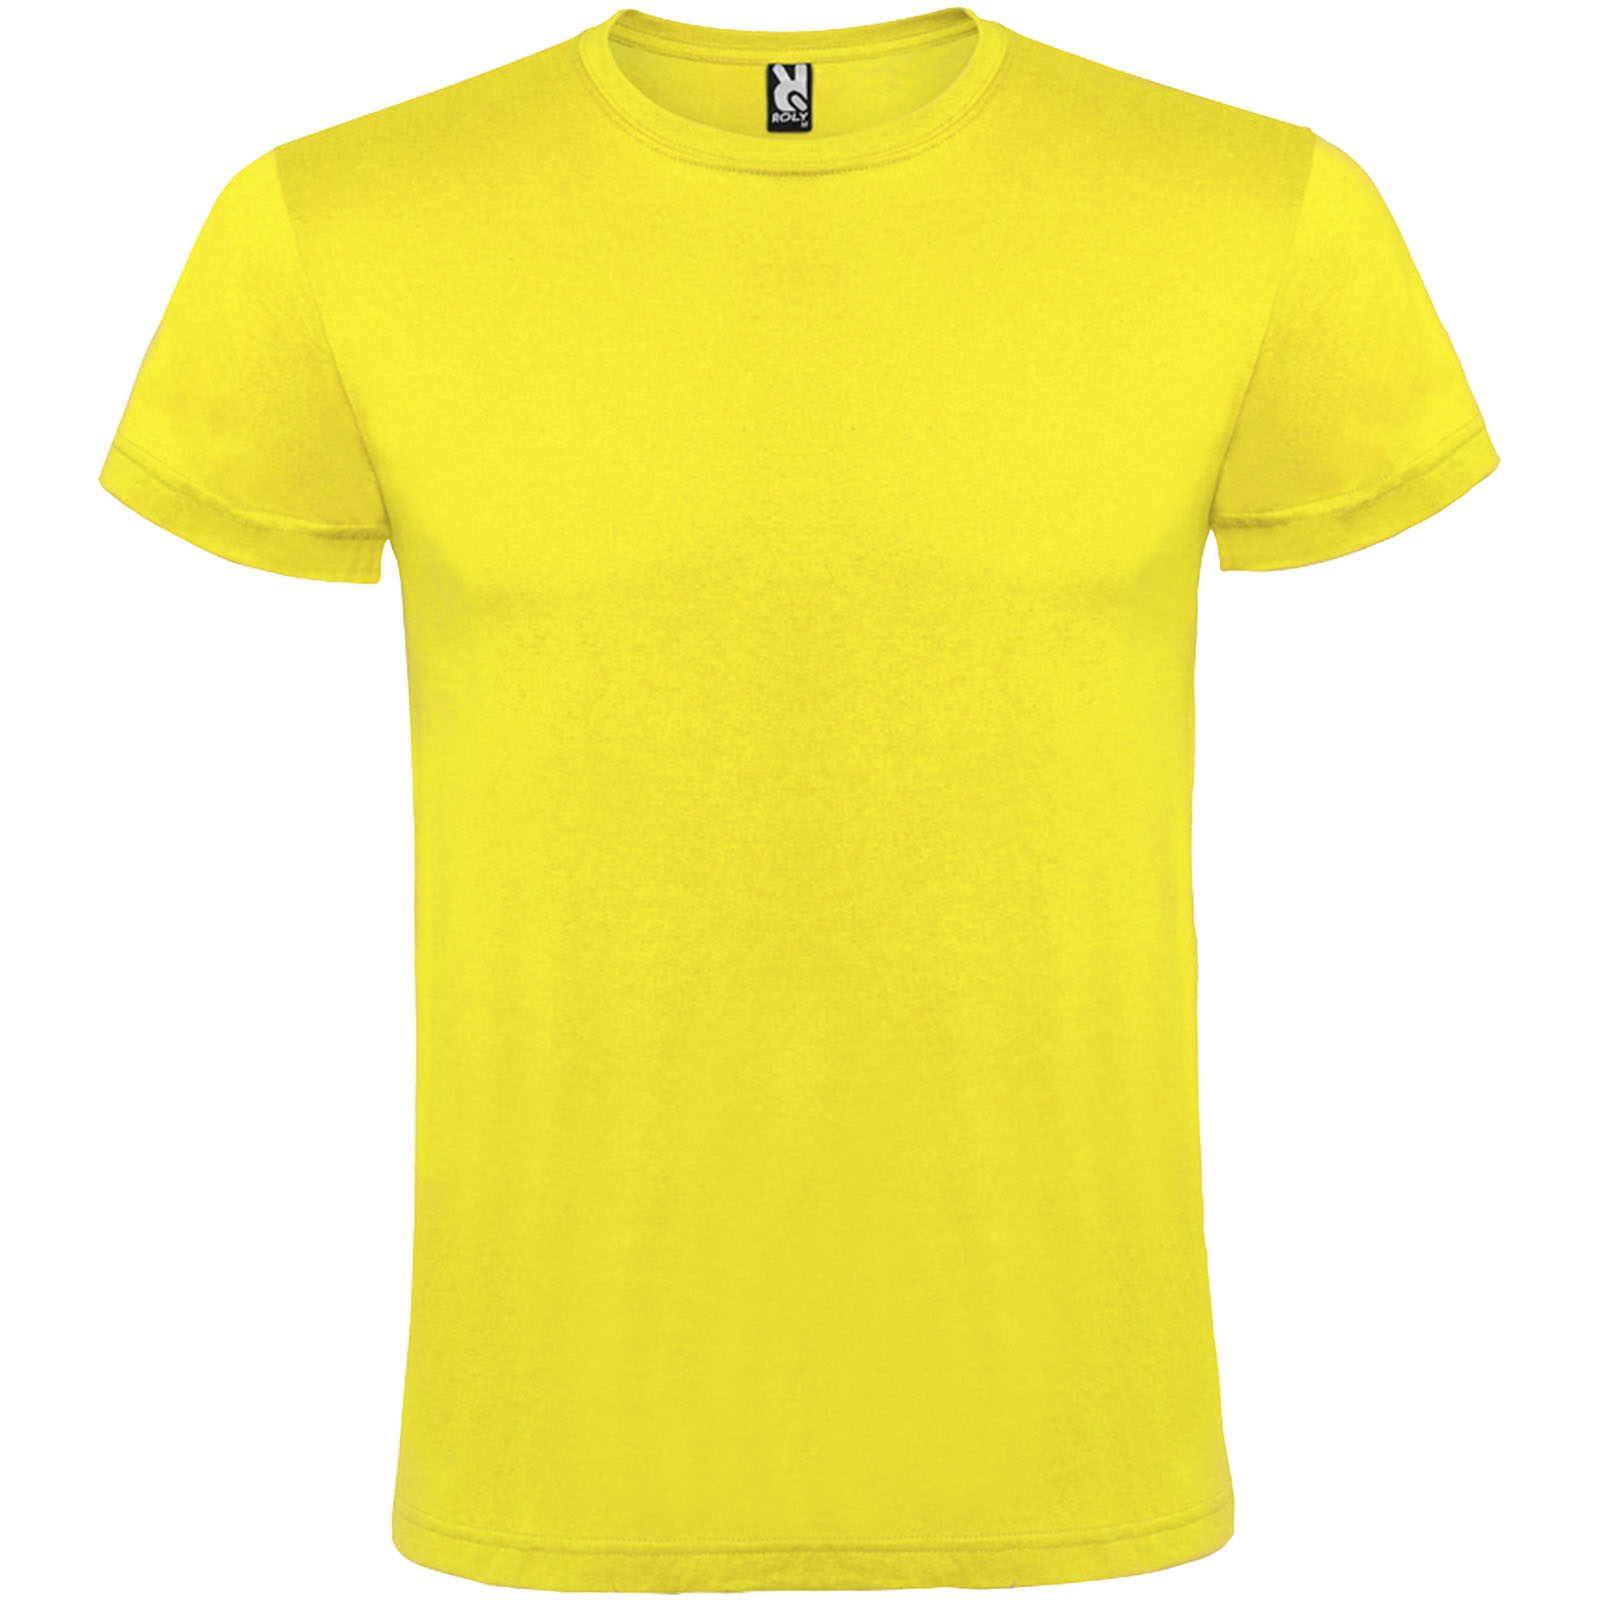 T-shirts - Atomic short sleeve unisex t-shirt